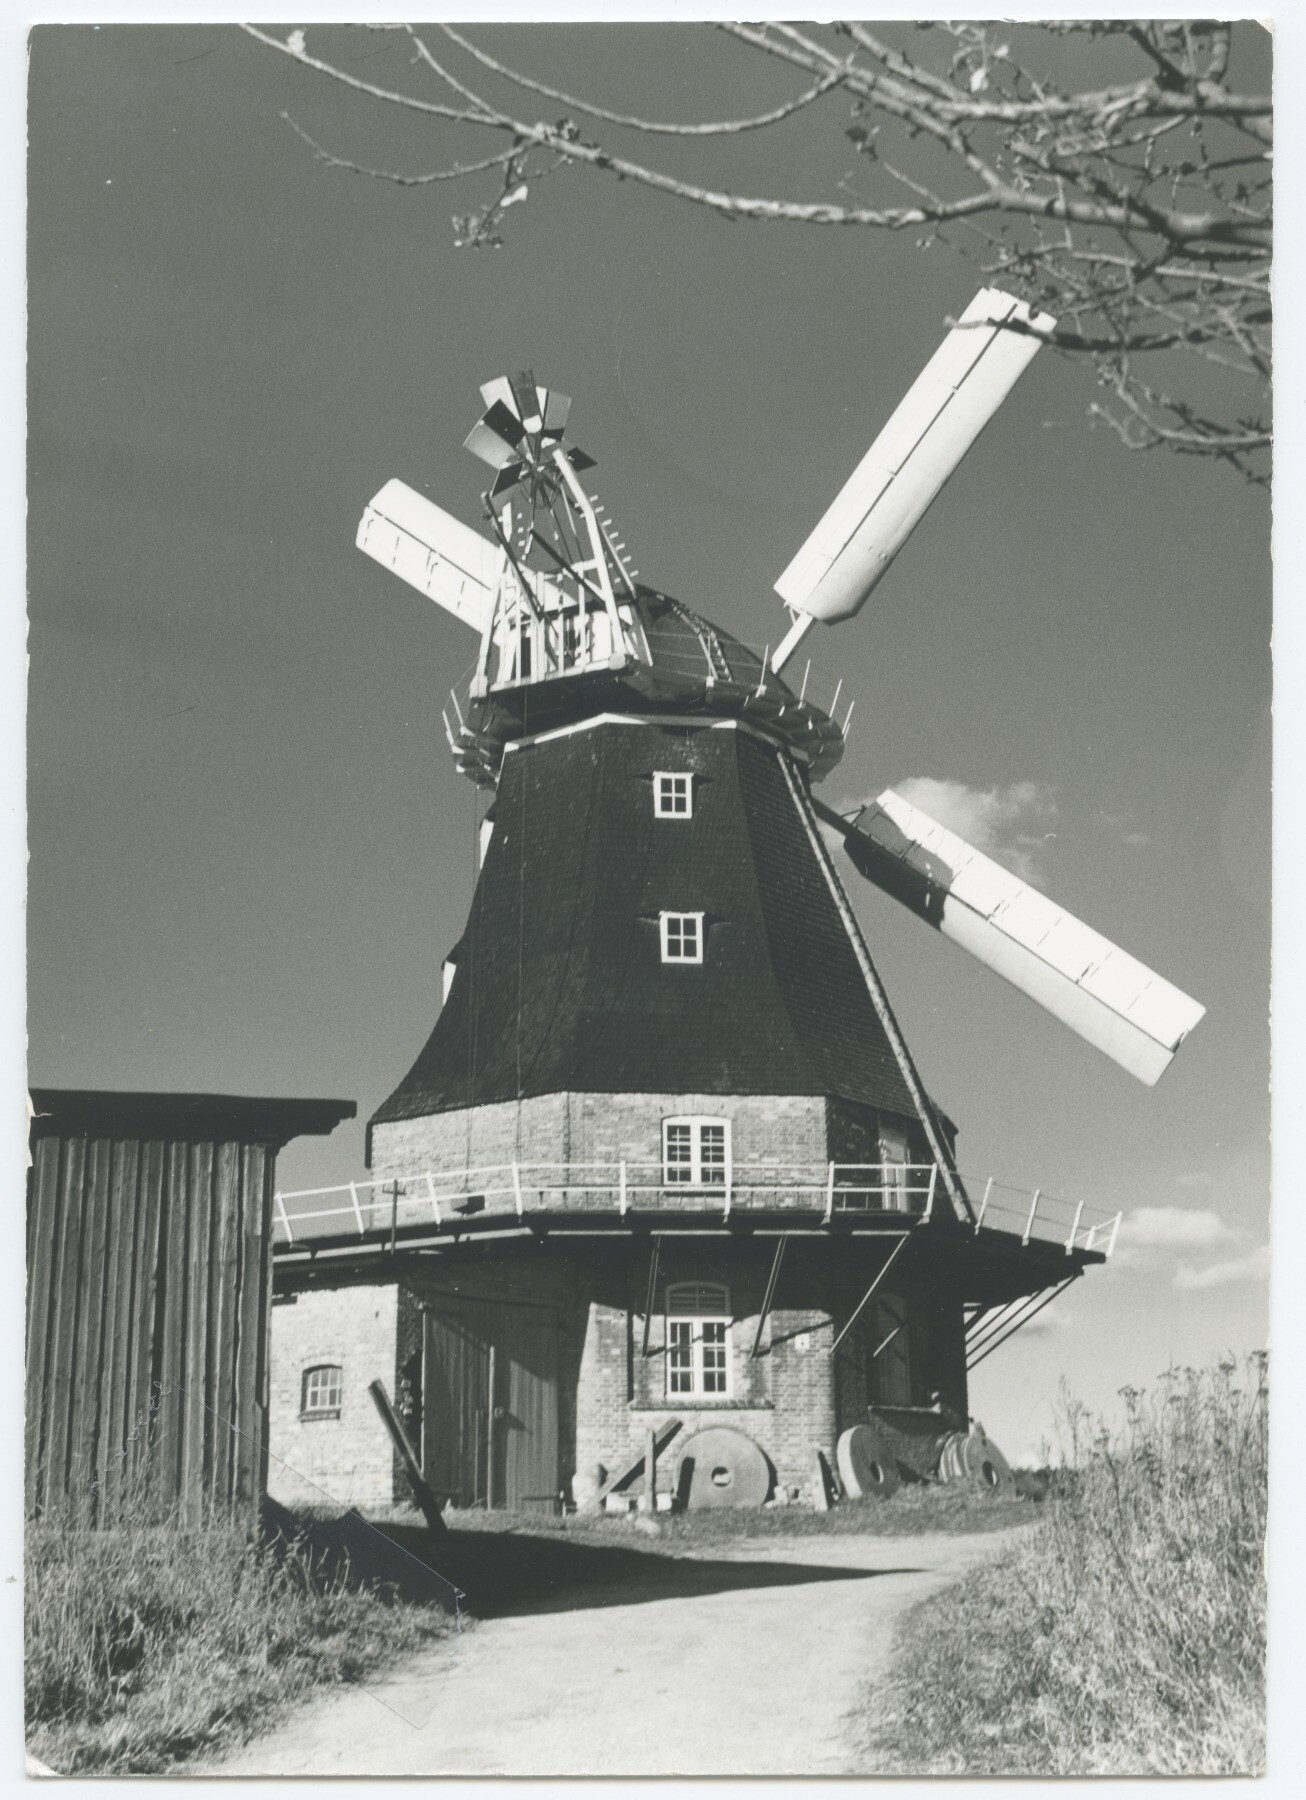 Gallerieholländerwindmühle Neubukow (Historische Mühle von Sanssouci CC BY-NC-ND)